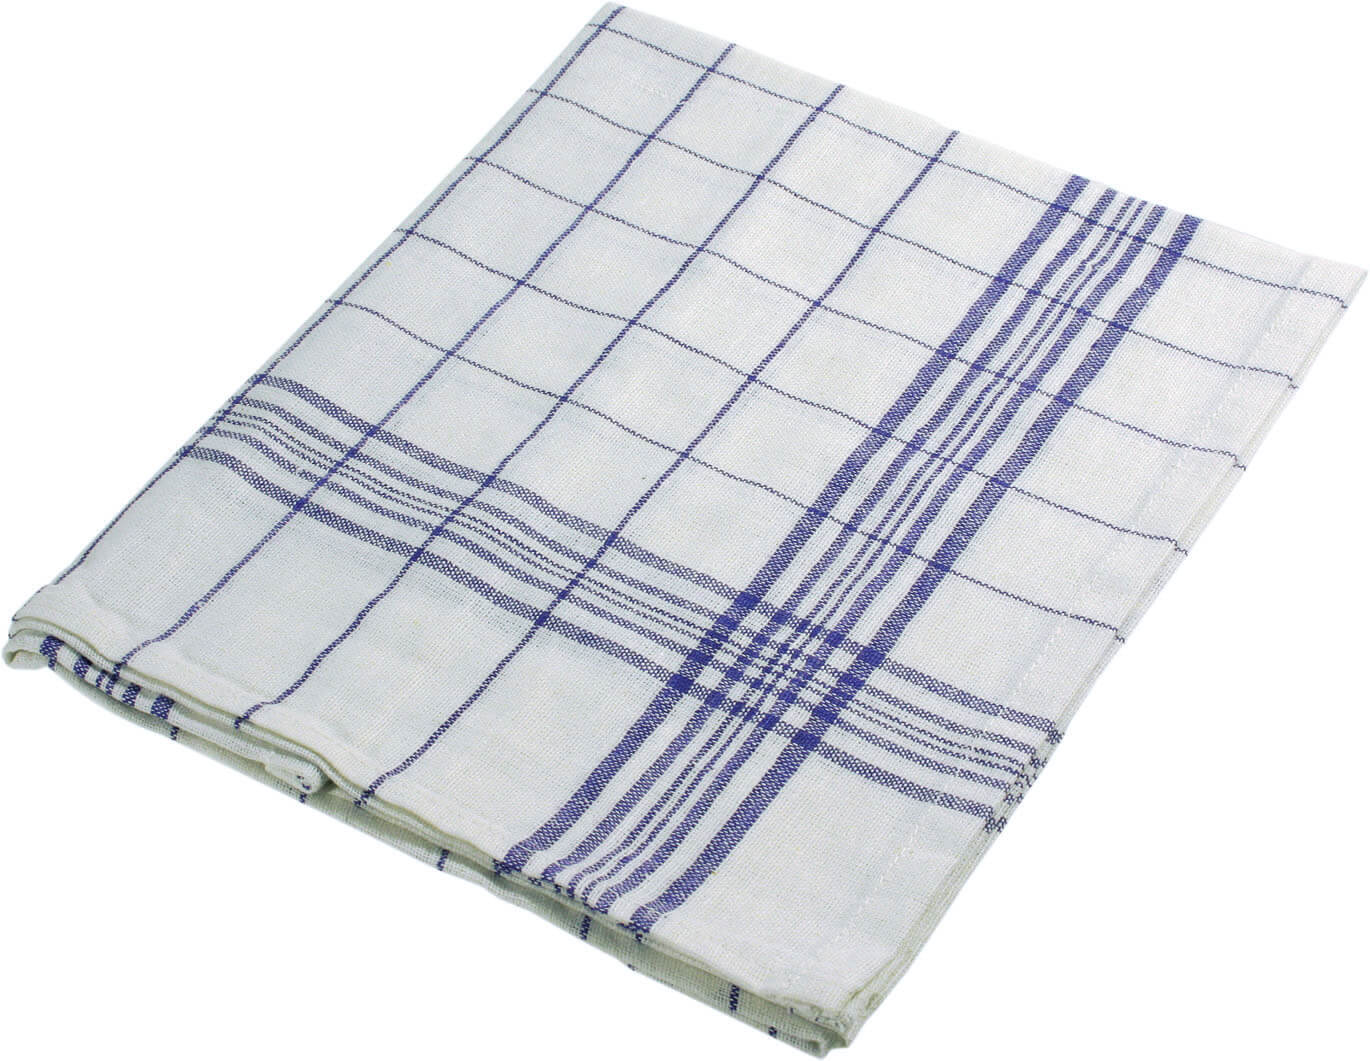 Tea towel - cotton (50 x 70cm)